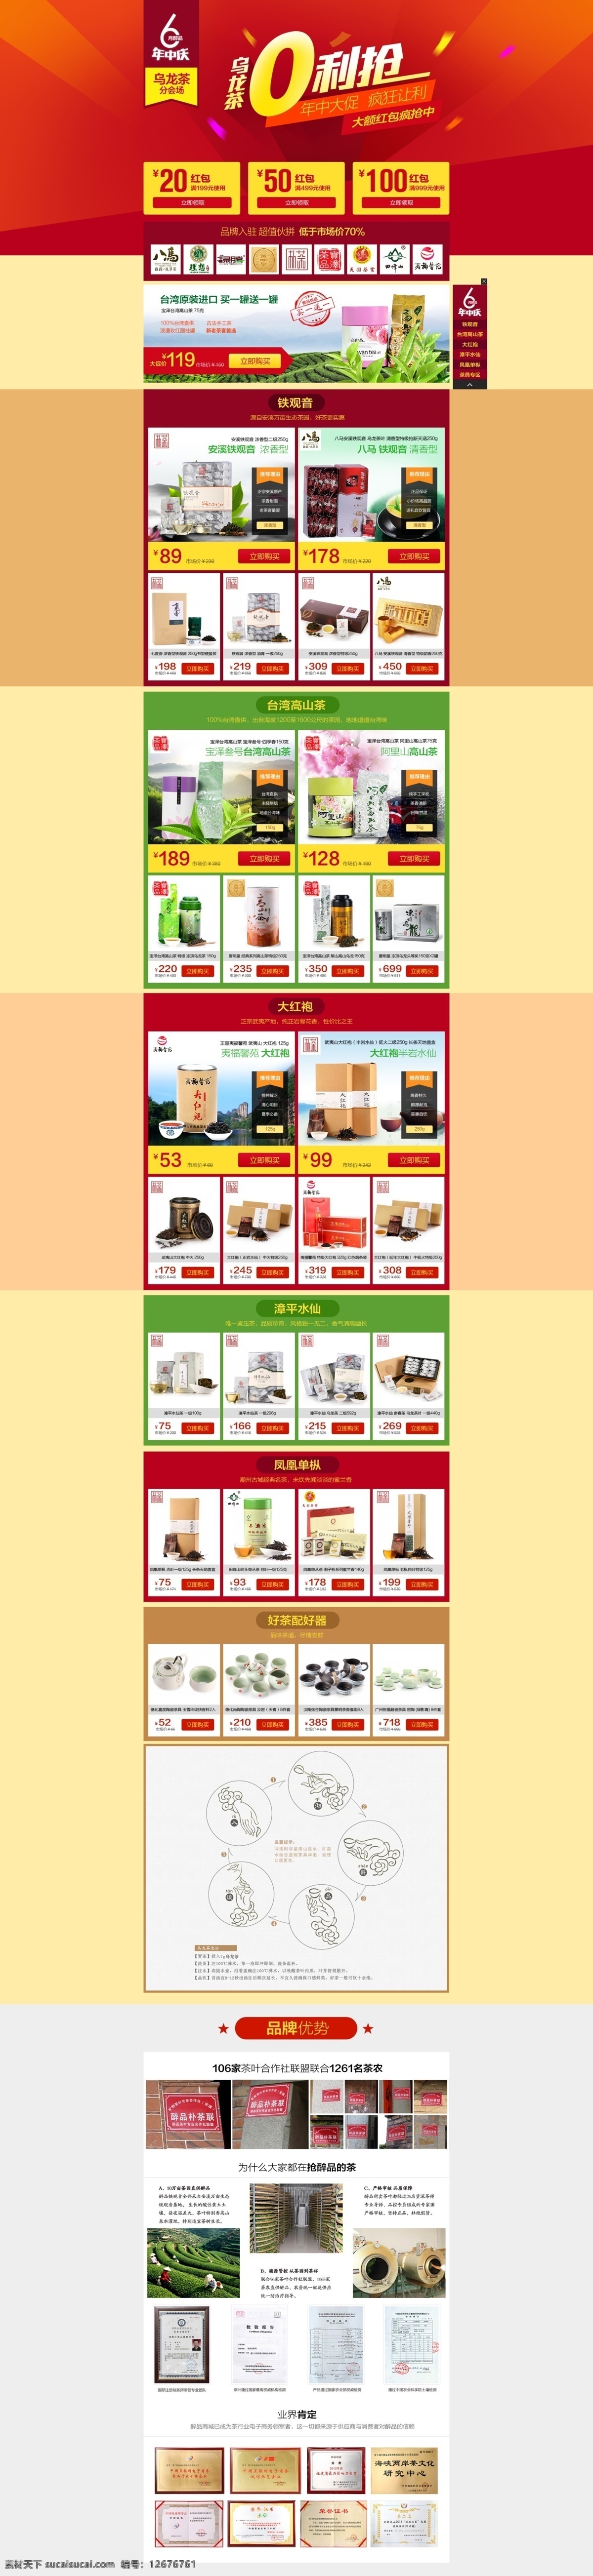 爆款 茶叶 促销 年中大促 乌龙茶 中文模板 专题页 分会场 web 界面设计 网页素材 其他网页素材